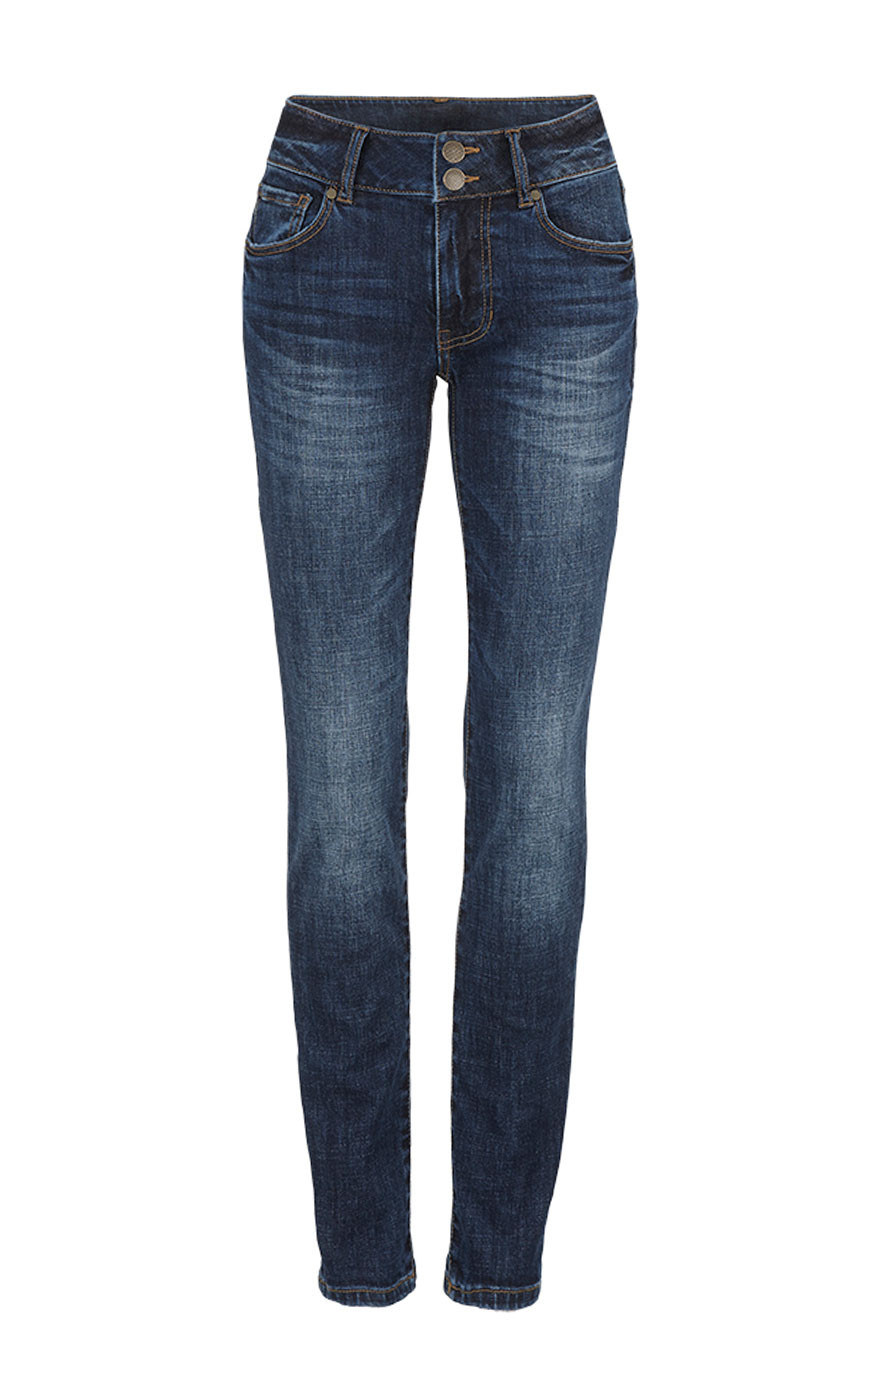 necked jeans price